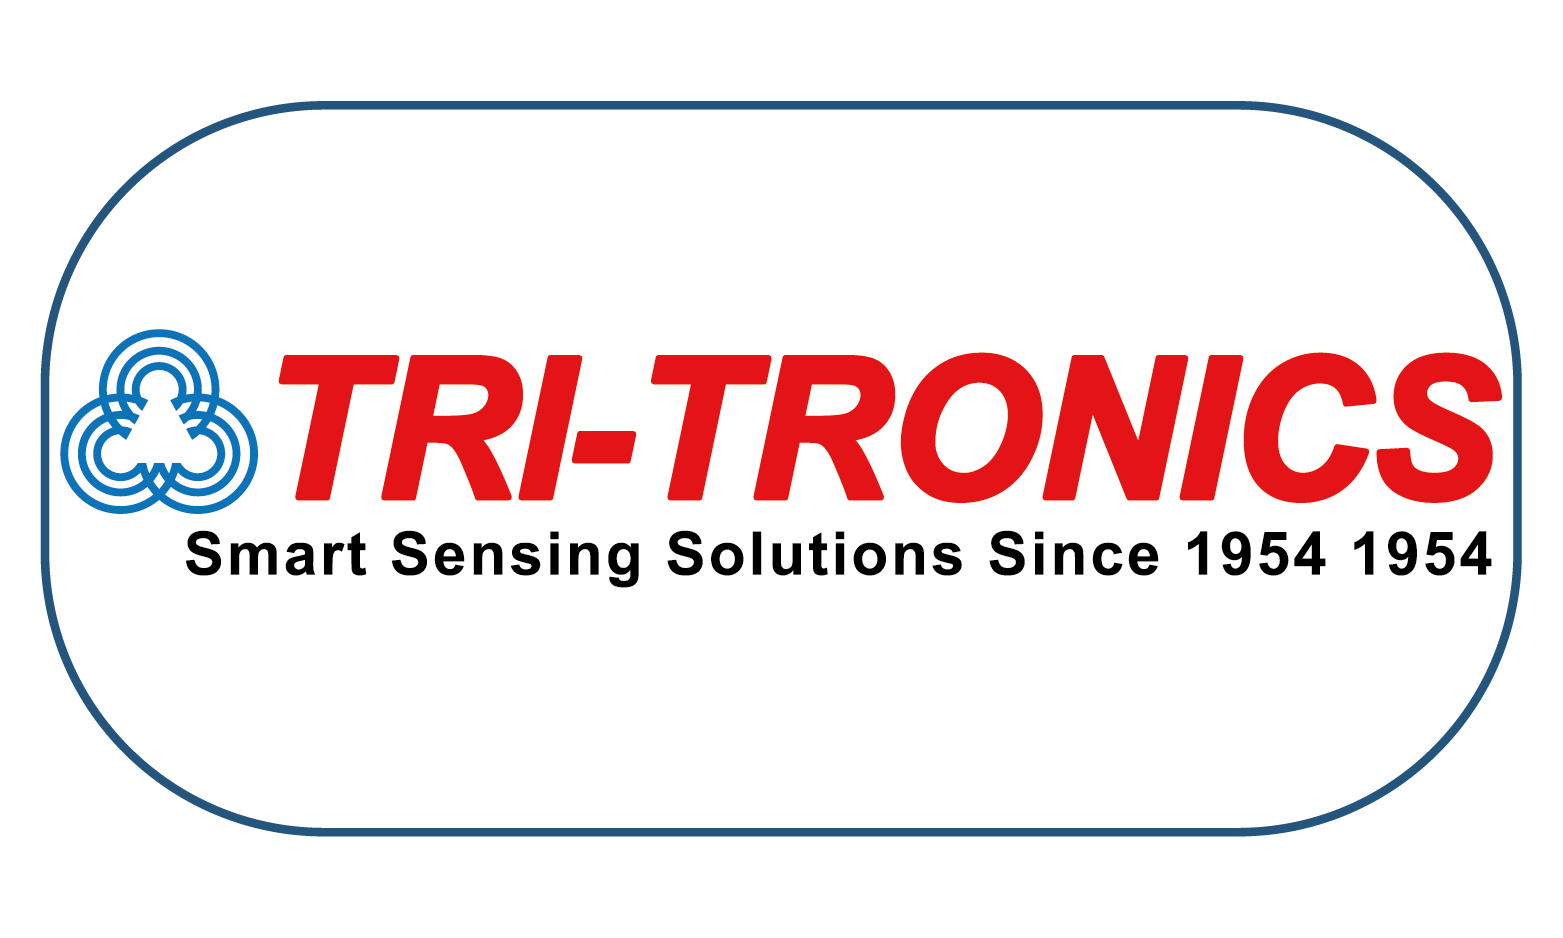 TRI-TRONICS diseña y fabrica sensores fotoeléctricos de alto rendimiento